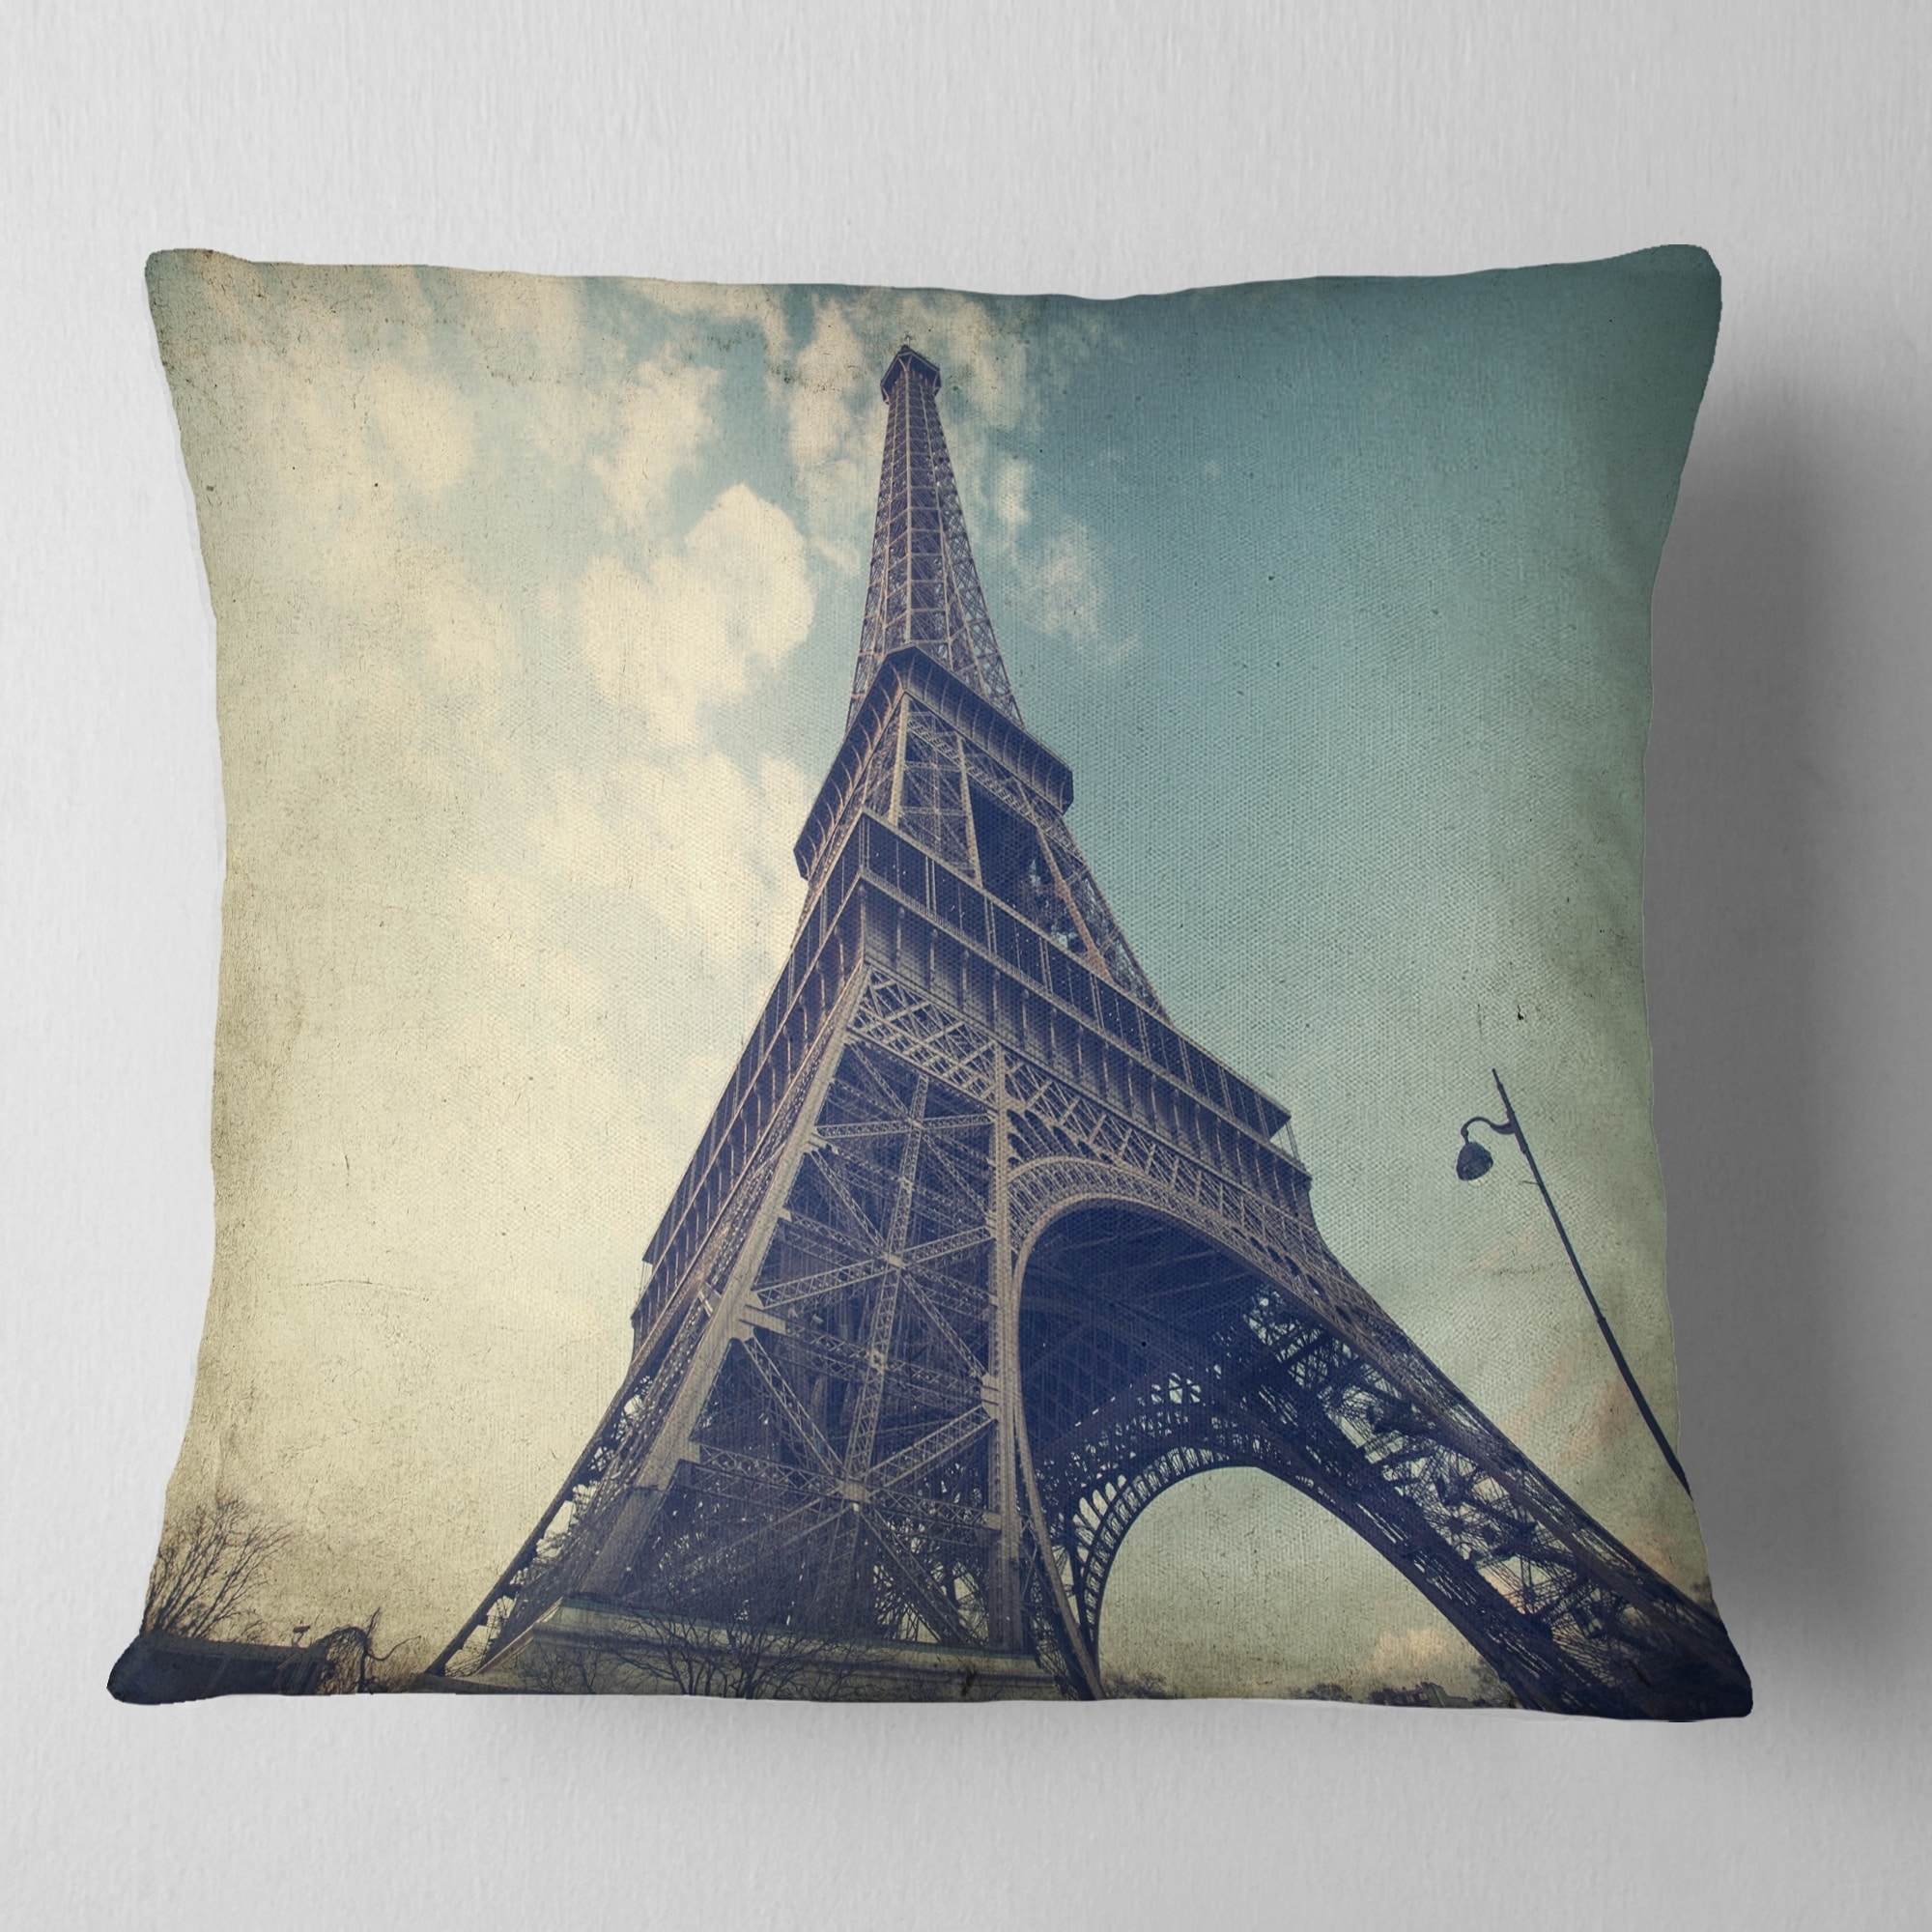 Designart CU9337-20-20-C Vintage View of Paris France Cityscape Photo Round Throw Pillow 20 